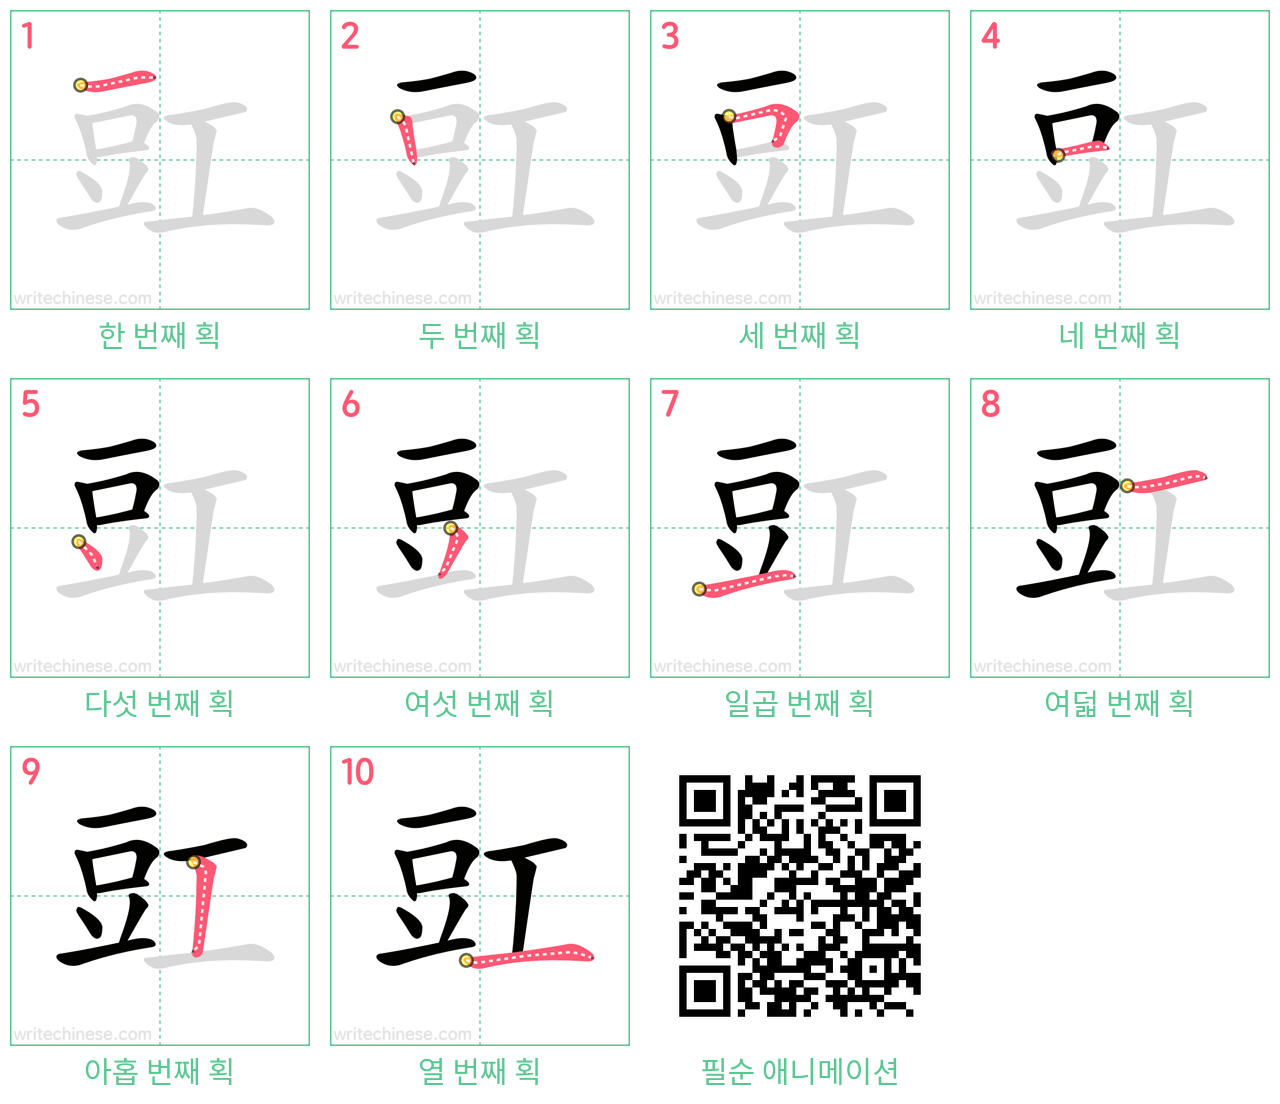 豇 step-by-step stroke order diagrams